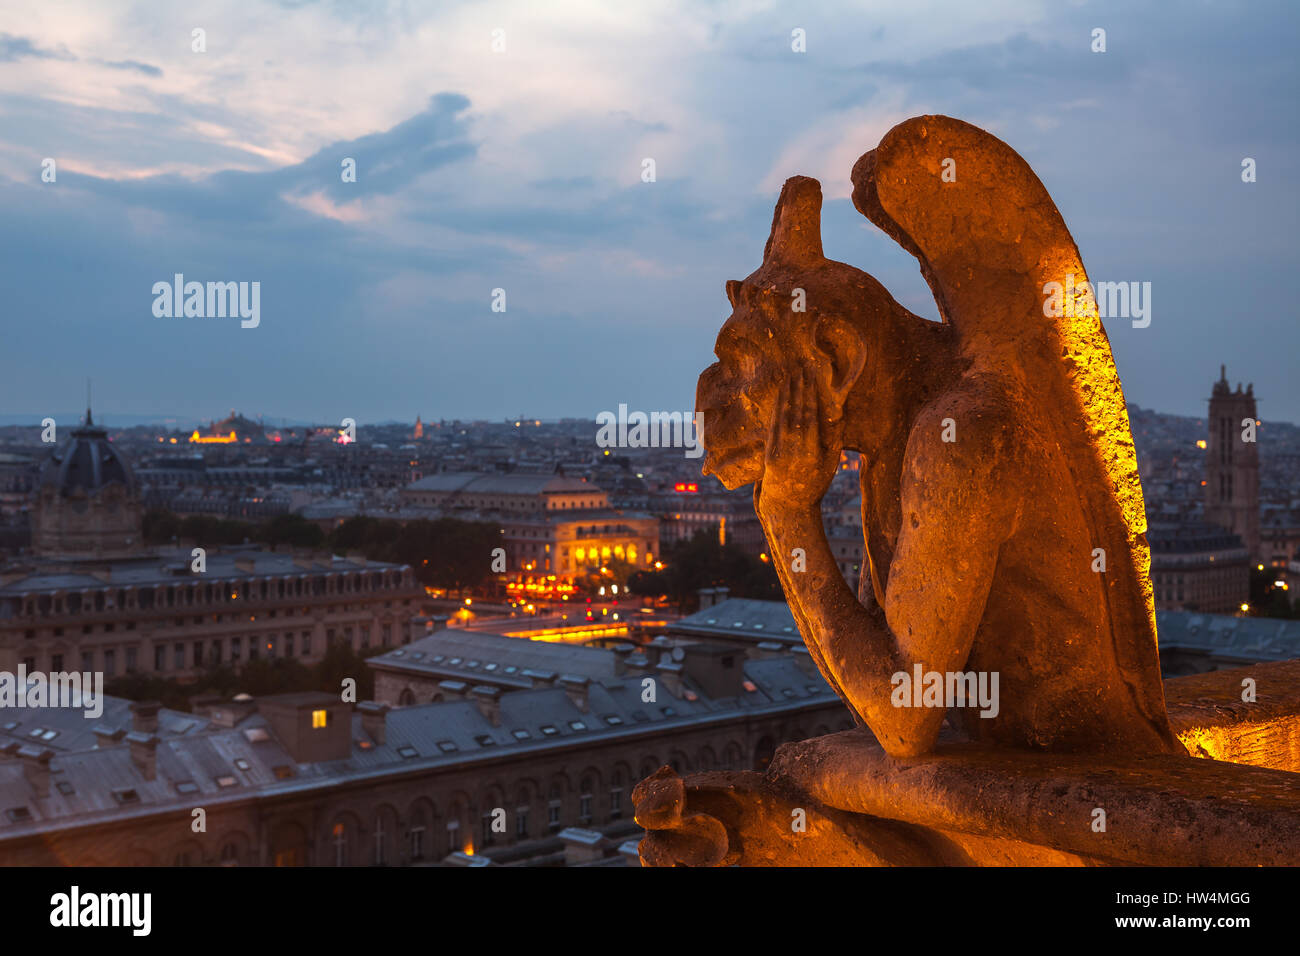 Parigi - luglio 15,2014: Gargoyle sul tetto della cattedrale di Notre Dame, la cattedrale di Parigi. Vista notturna dal tetto della cattedrale di Notre Dame de pari. Luglio 15,Parigi, Francia. Foto Stock